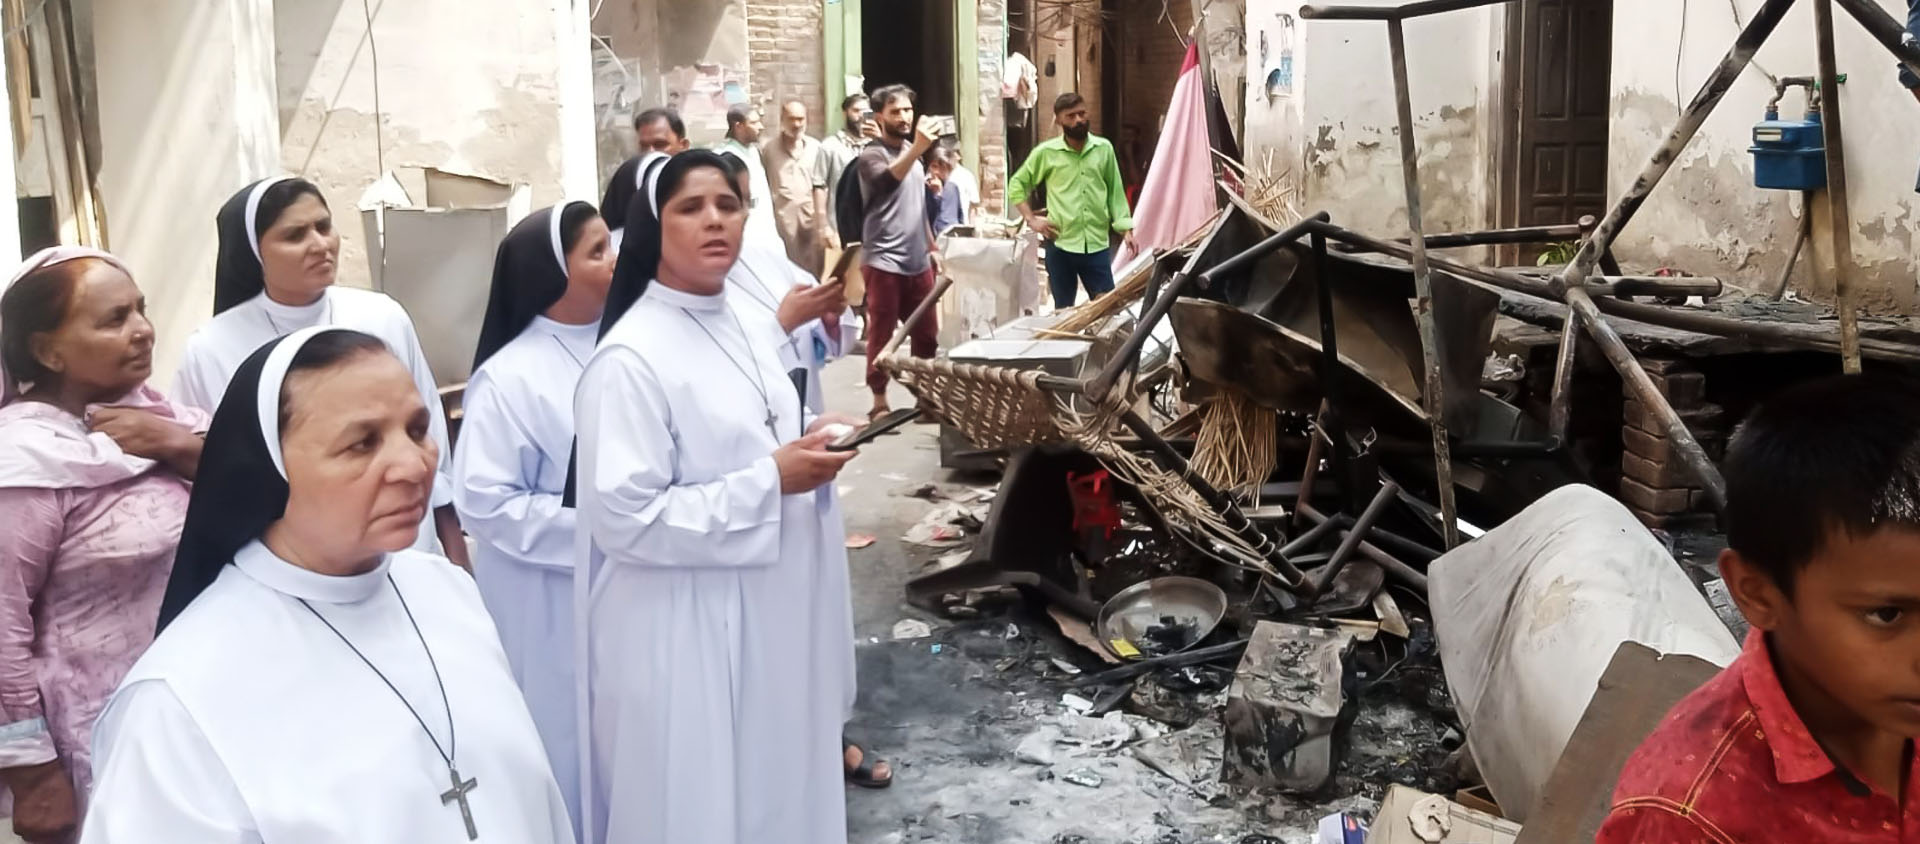 Les Sœurs dominicaines de Faisalabad aident les habitants du quartier chrétien de Jaranwala, victimes de violences le 16 août dernier | © Good News TV/Facebook